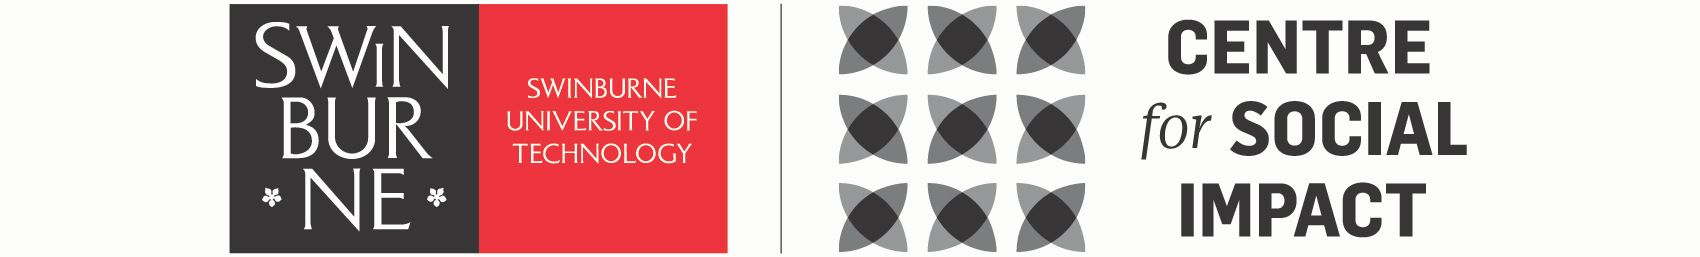 斯文本科2022十二强赛程表技大学的标志是剩下9星状图在中间和“社会影响中心”的文本